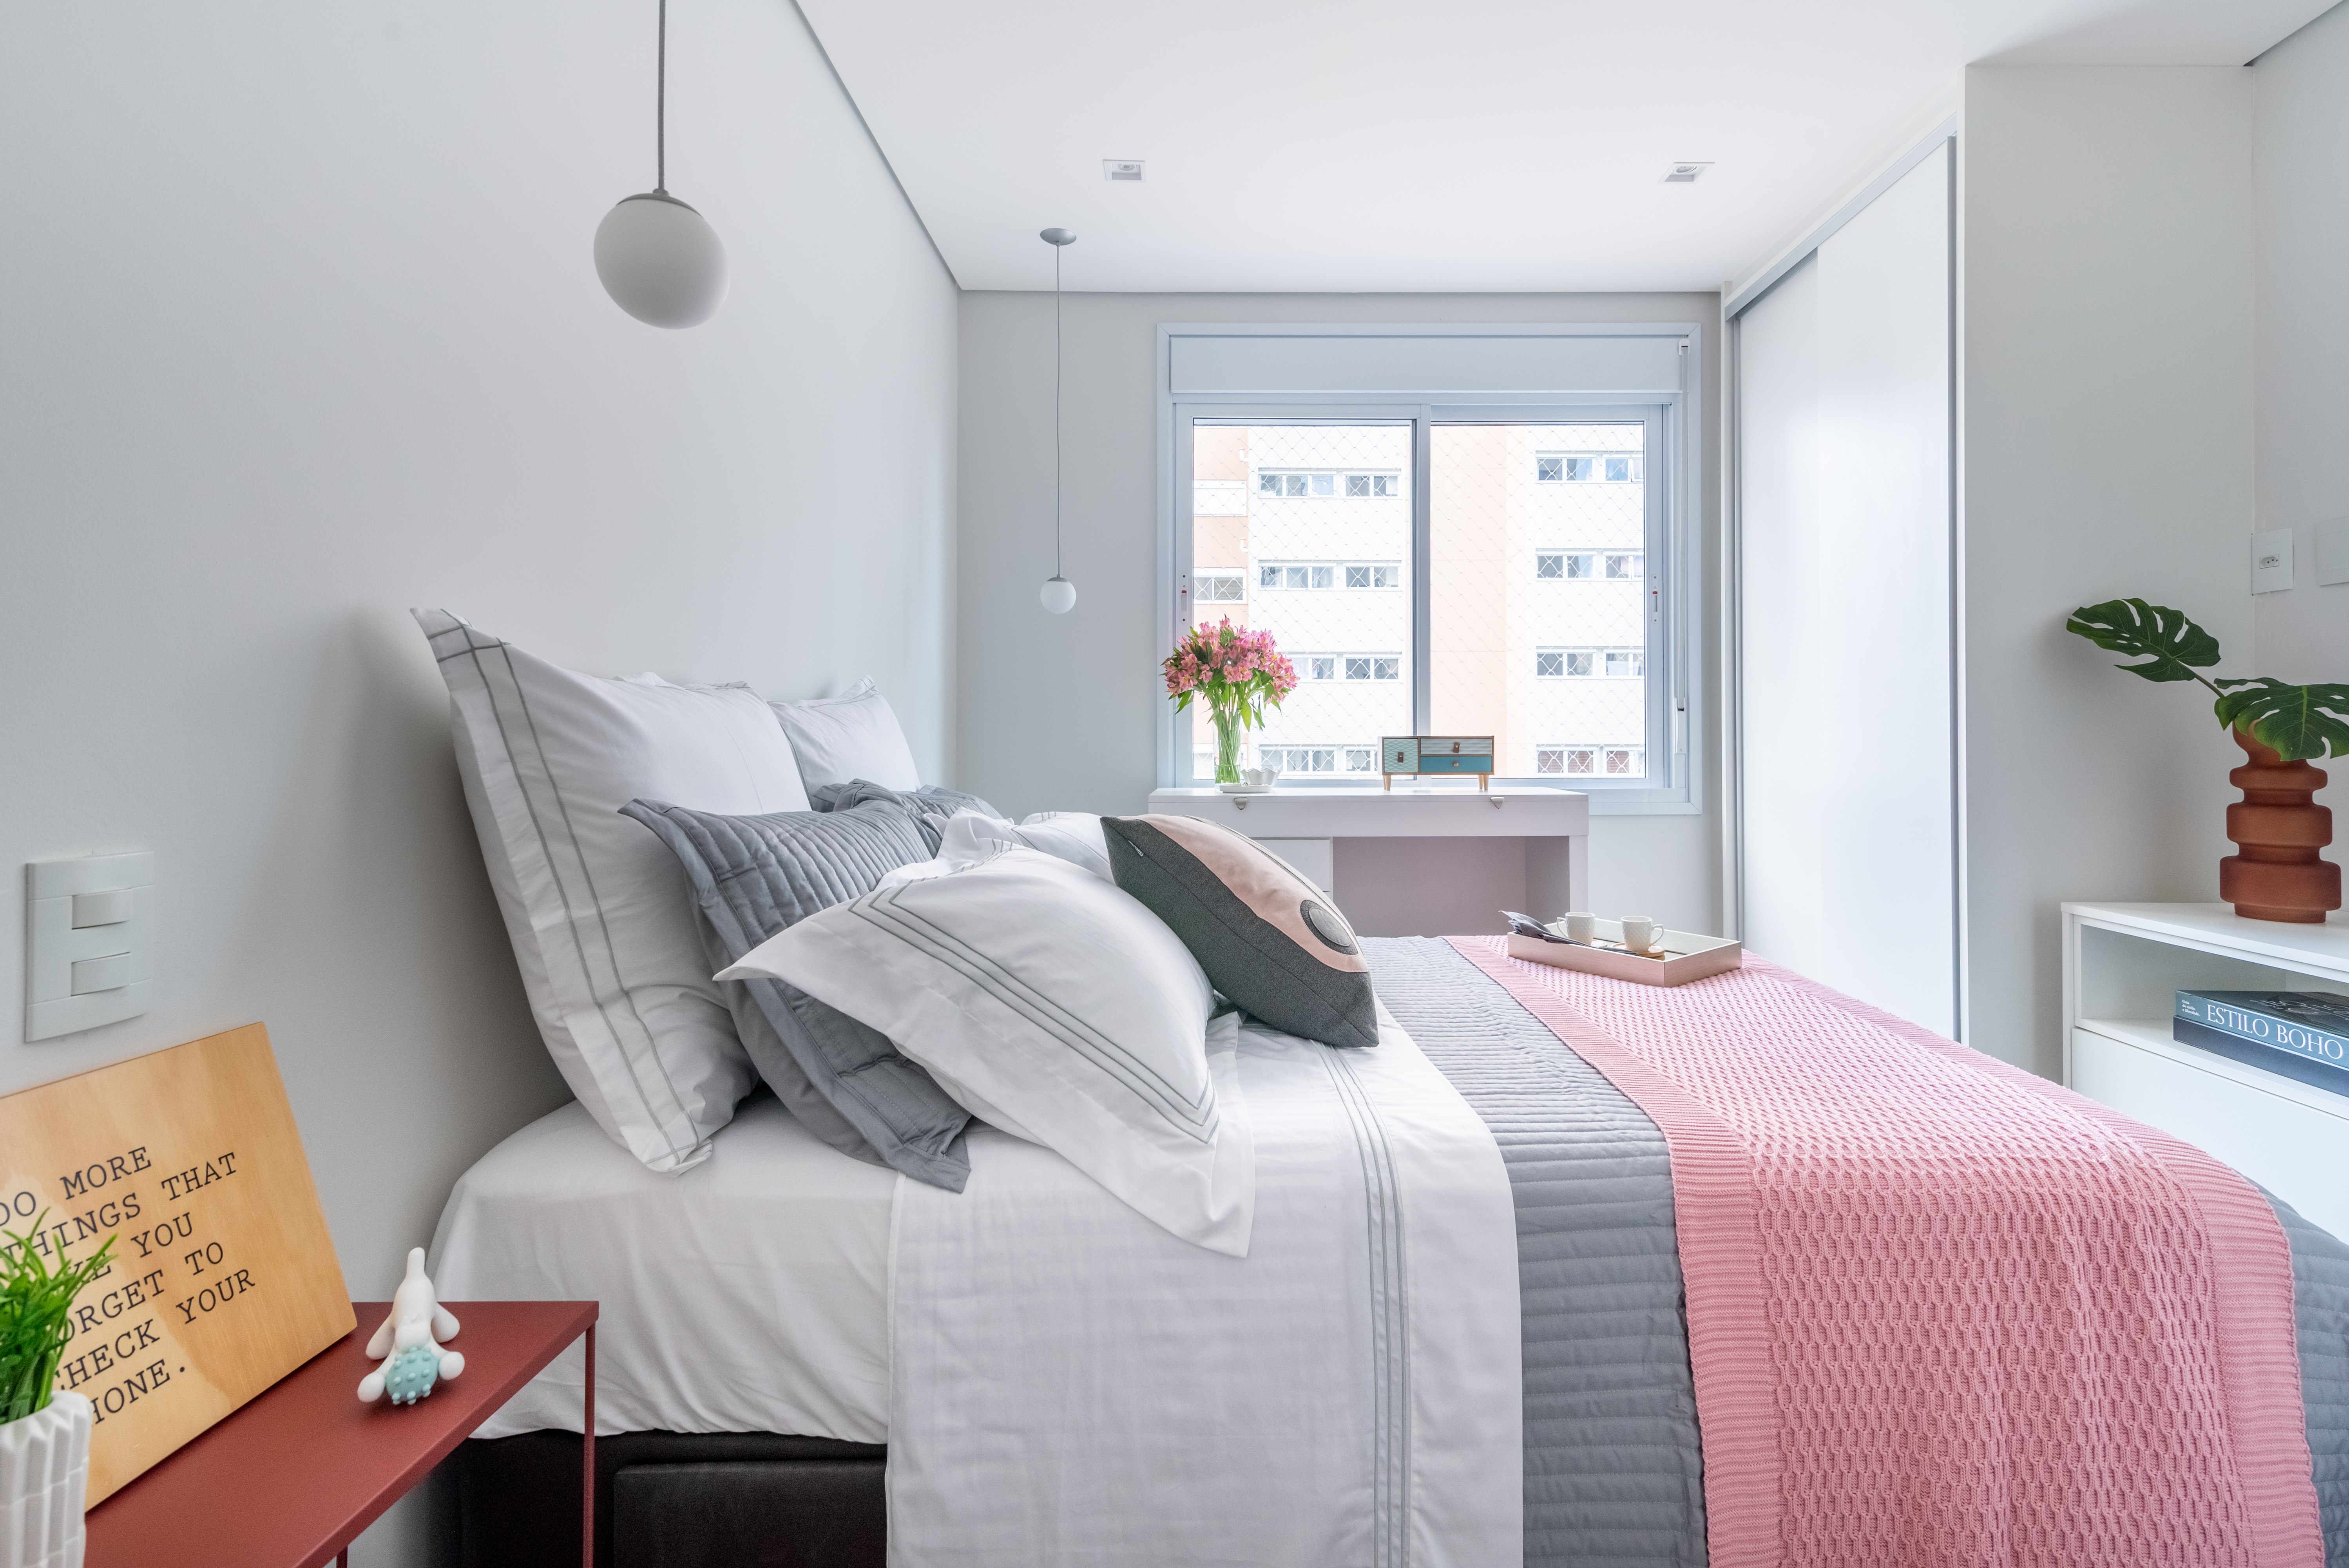 Projeto de Isabella Nalon. Na foto, quarto com cama de casal e armário branco com espelho na porta.